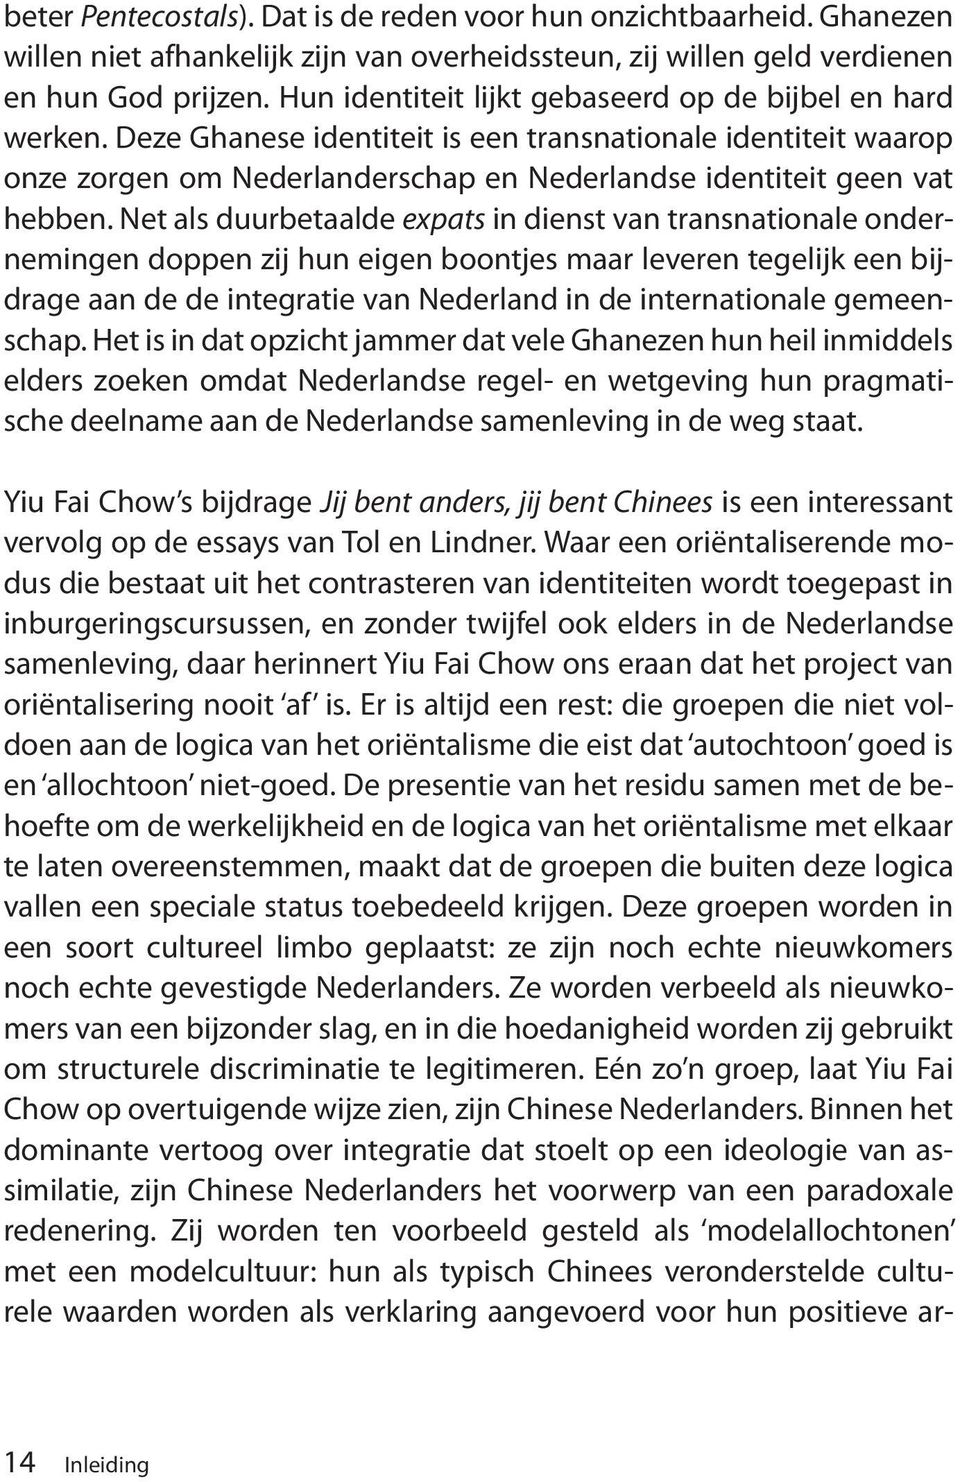 Net als duurbetaalde expats in dienst van transnationale ondernemingen doppen zij hun eigen boontjes maar leveren tegelijk een bijdrage aan de de integratie van Nederland in de internationale